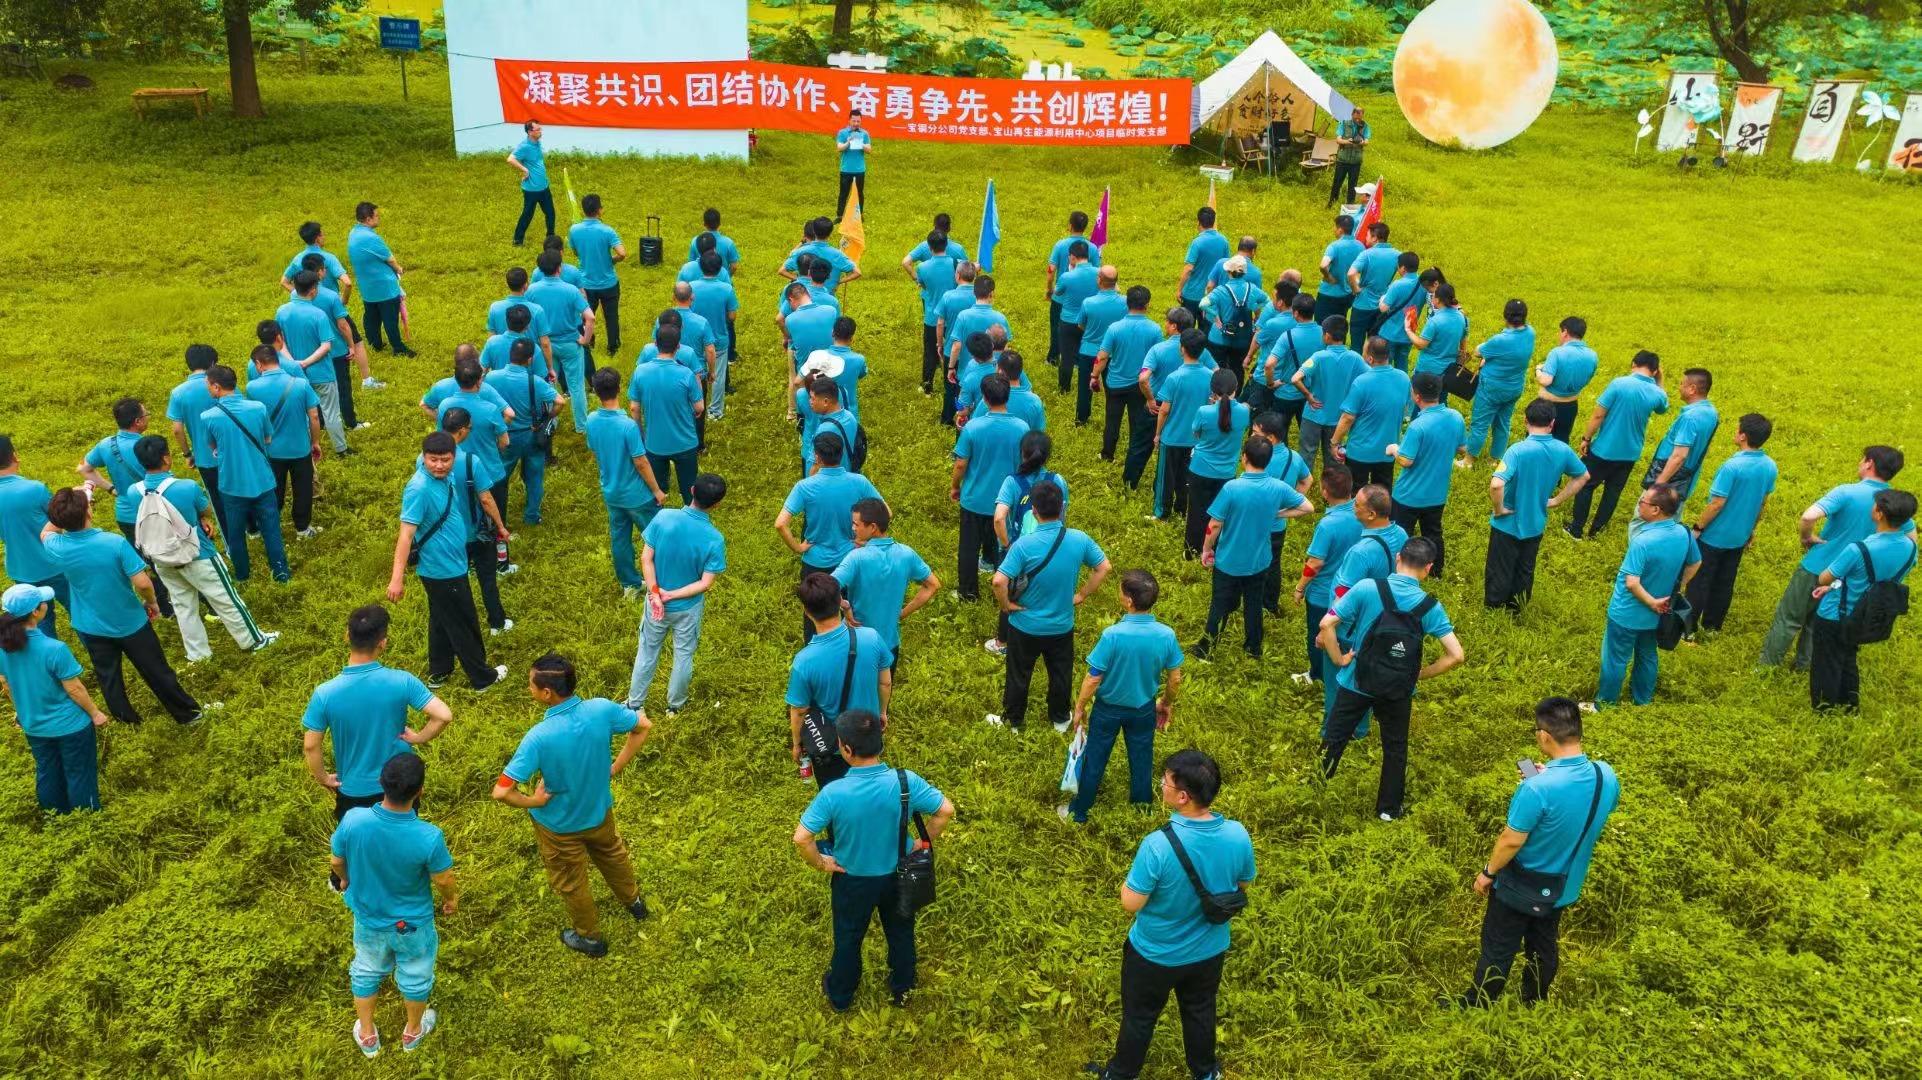 上海宝冶冶金工程有限公司基层单位开展团队户外拓展活动